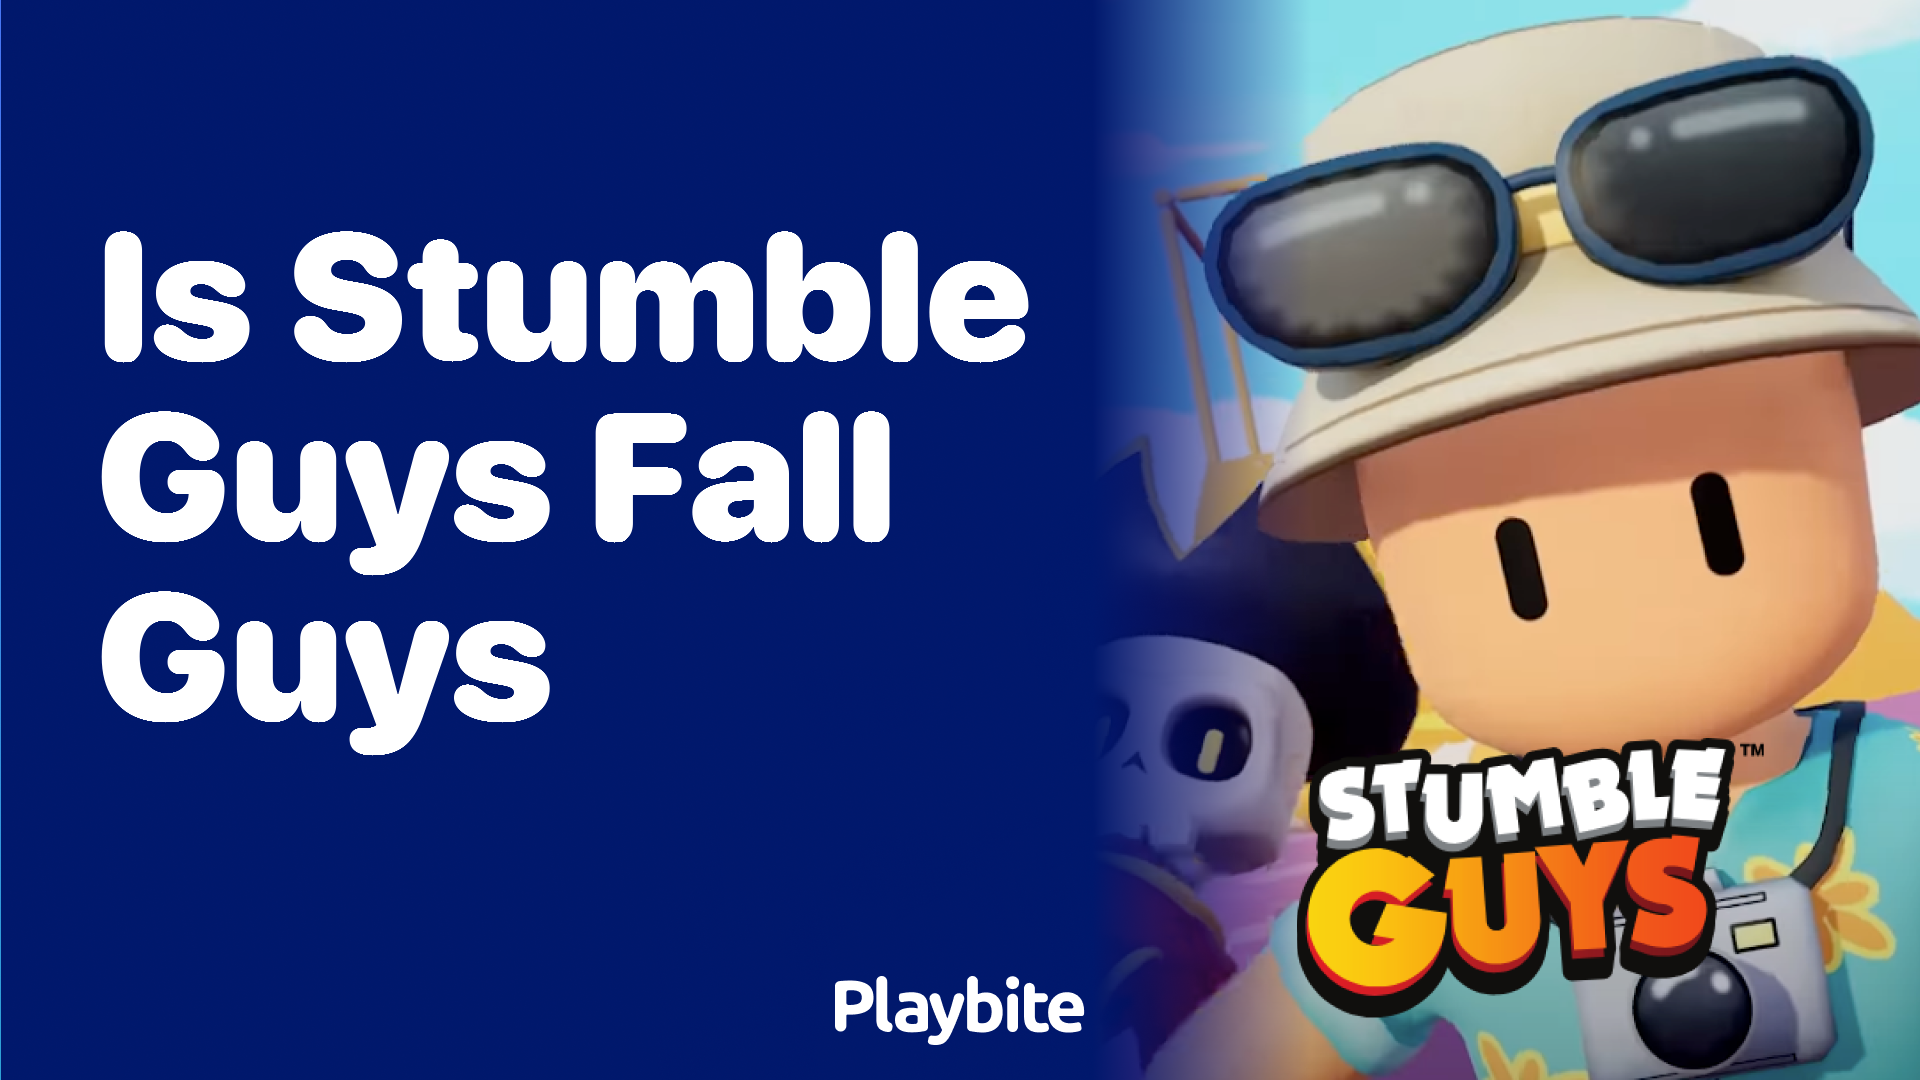 Is Stumble Guys the Same as Fall Guys?